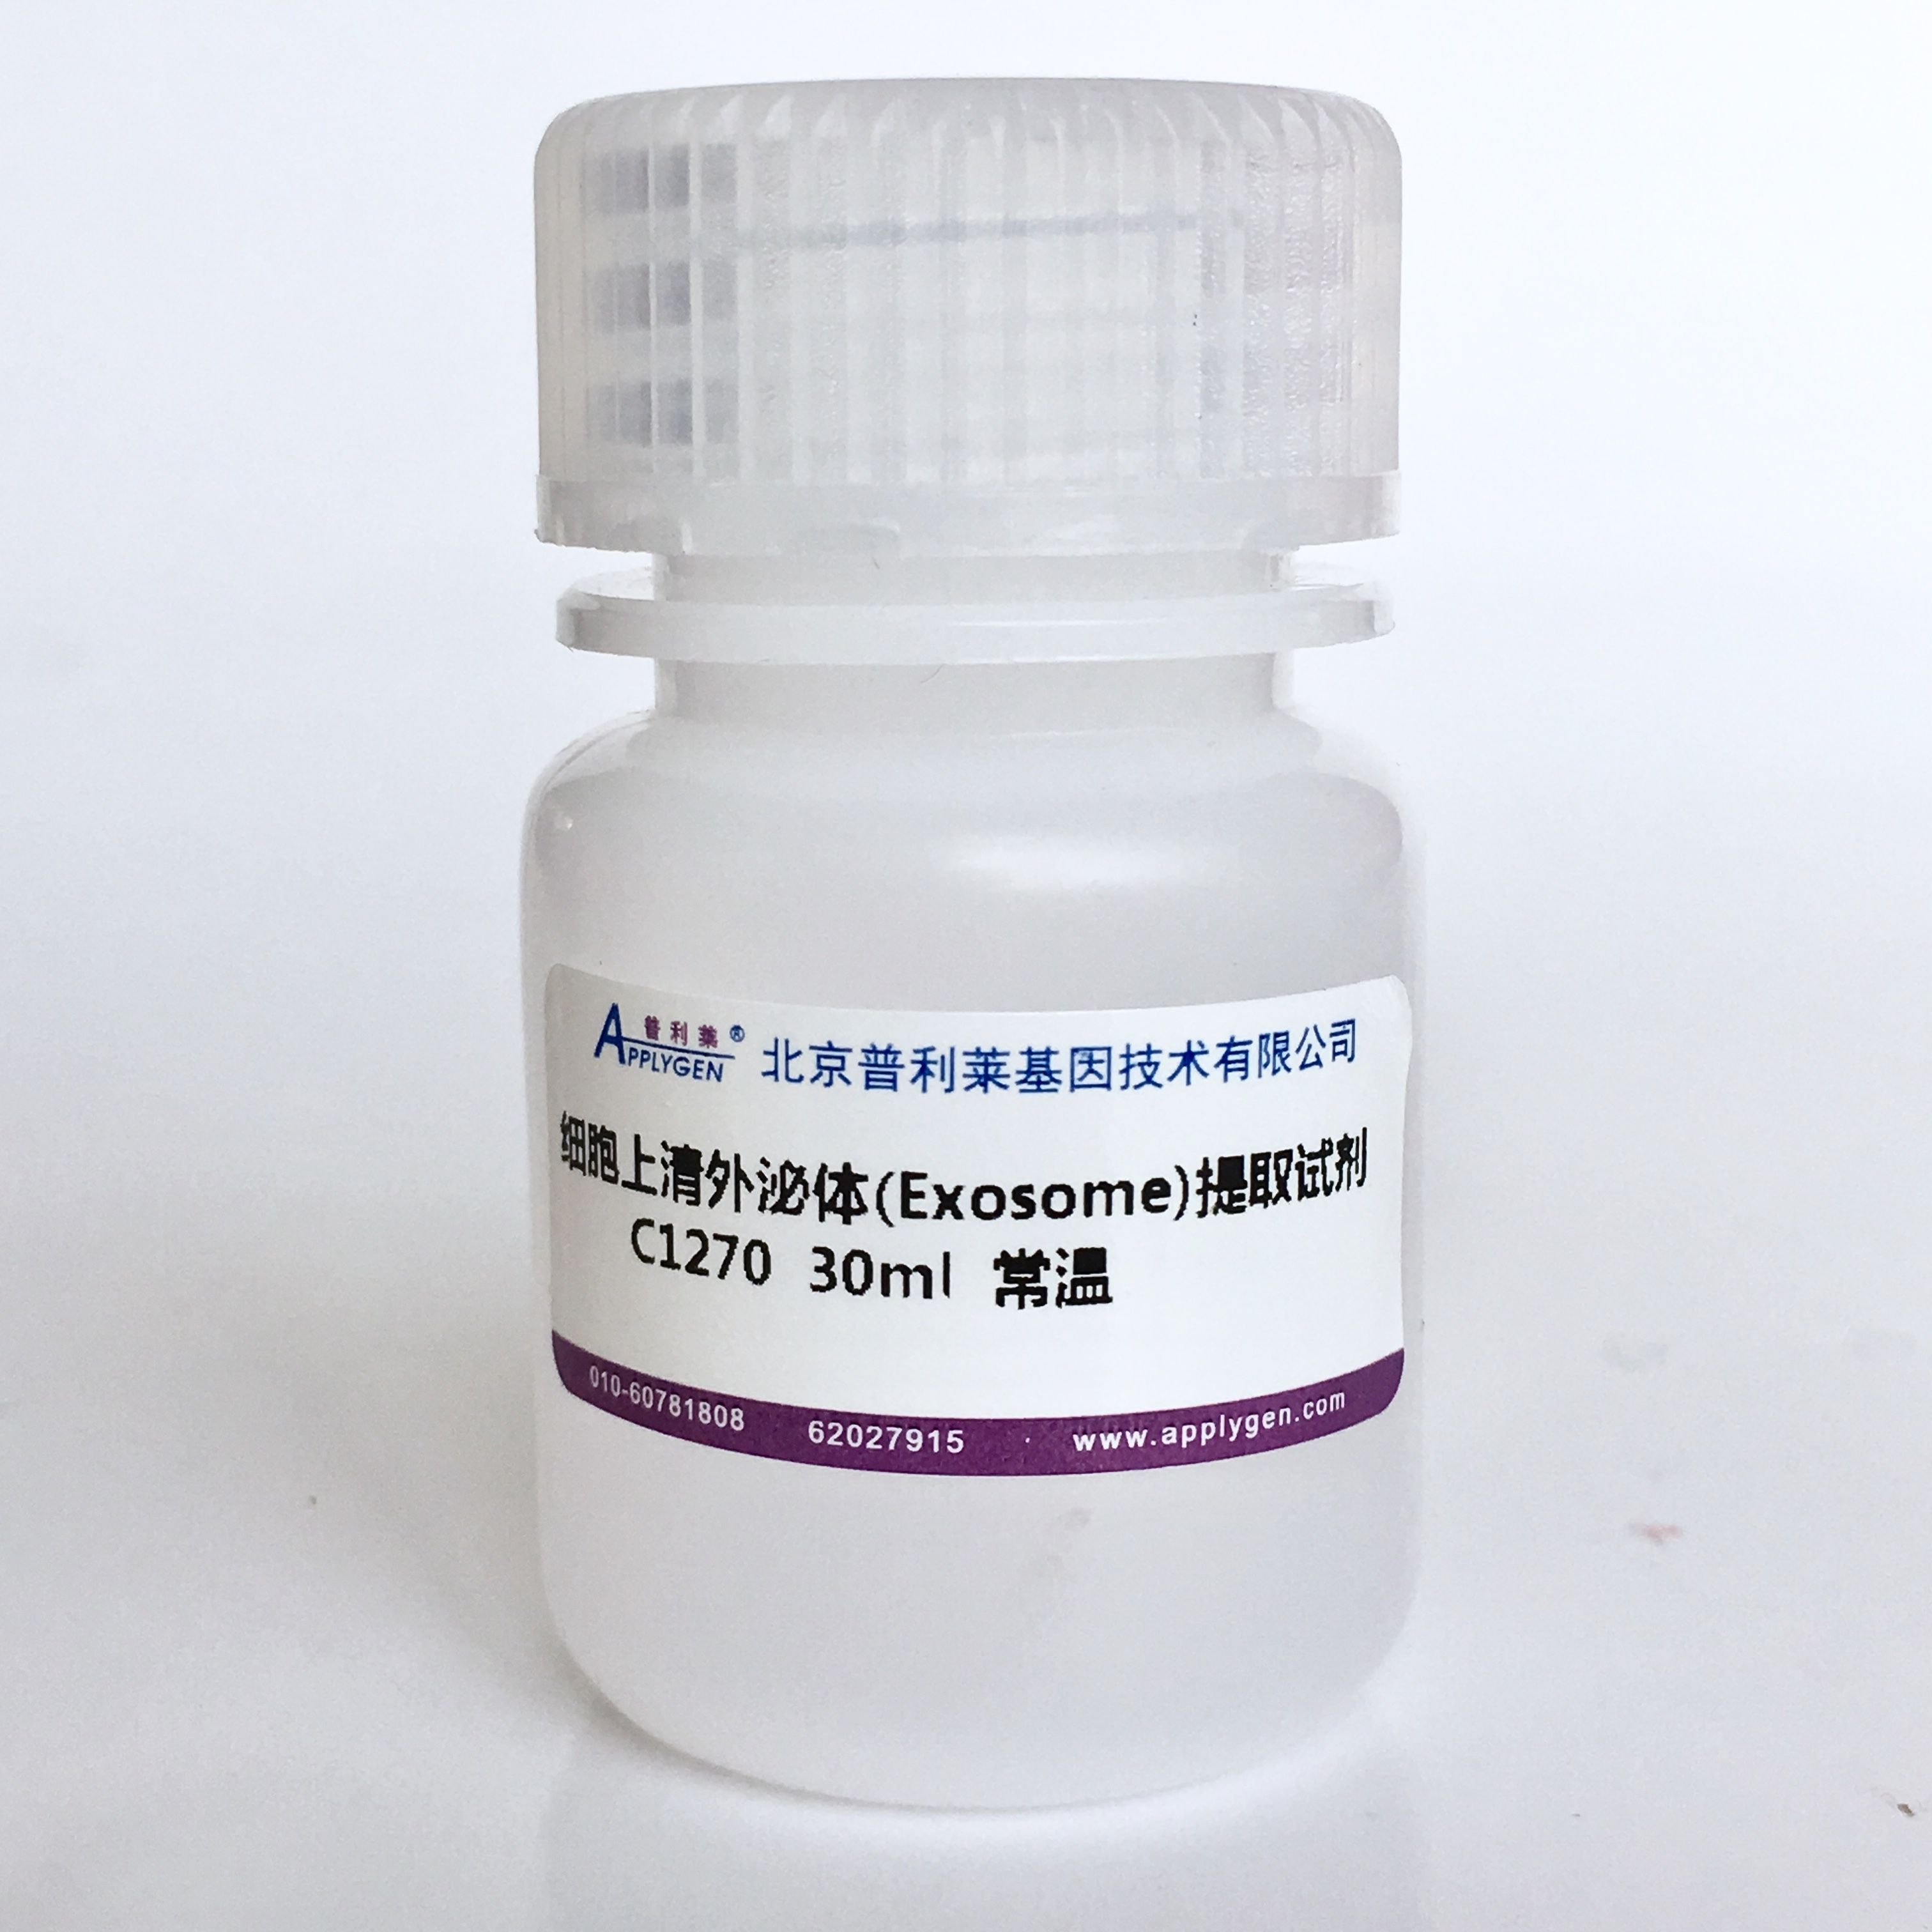 细胞上清外泌体(Exosome)提取试剂    C1270  厂家直销，提供OEM定制服务，大包装更优惠 